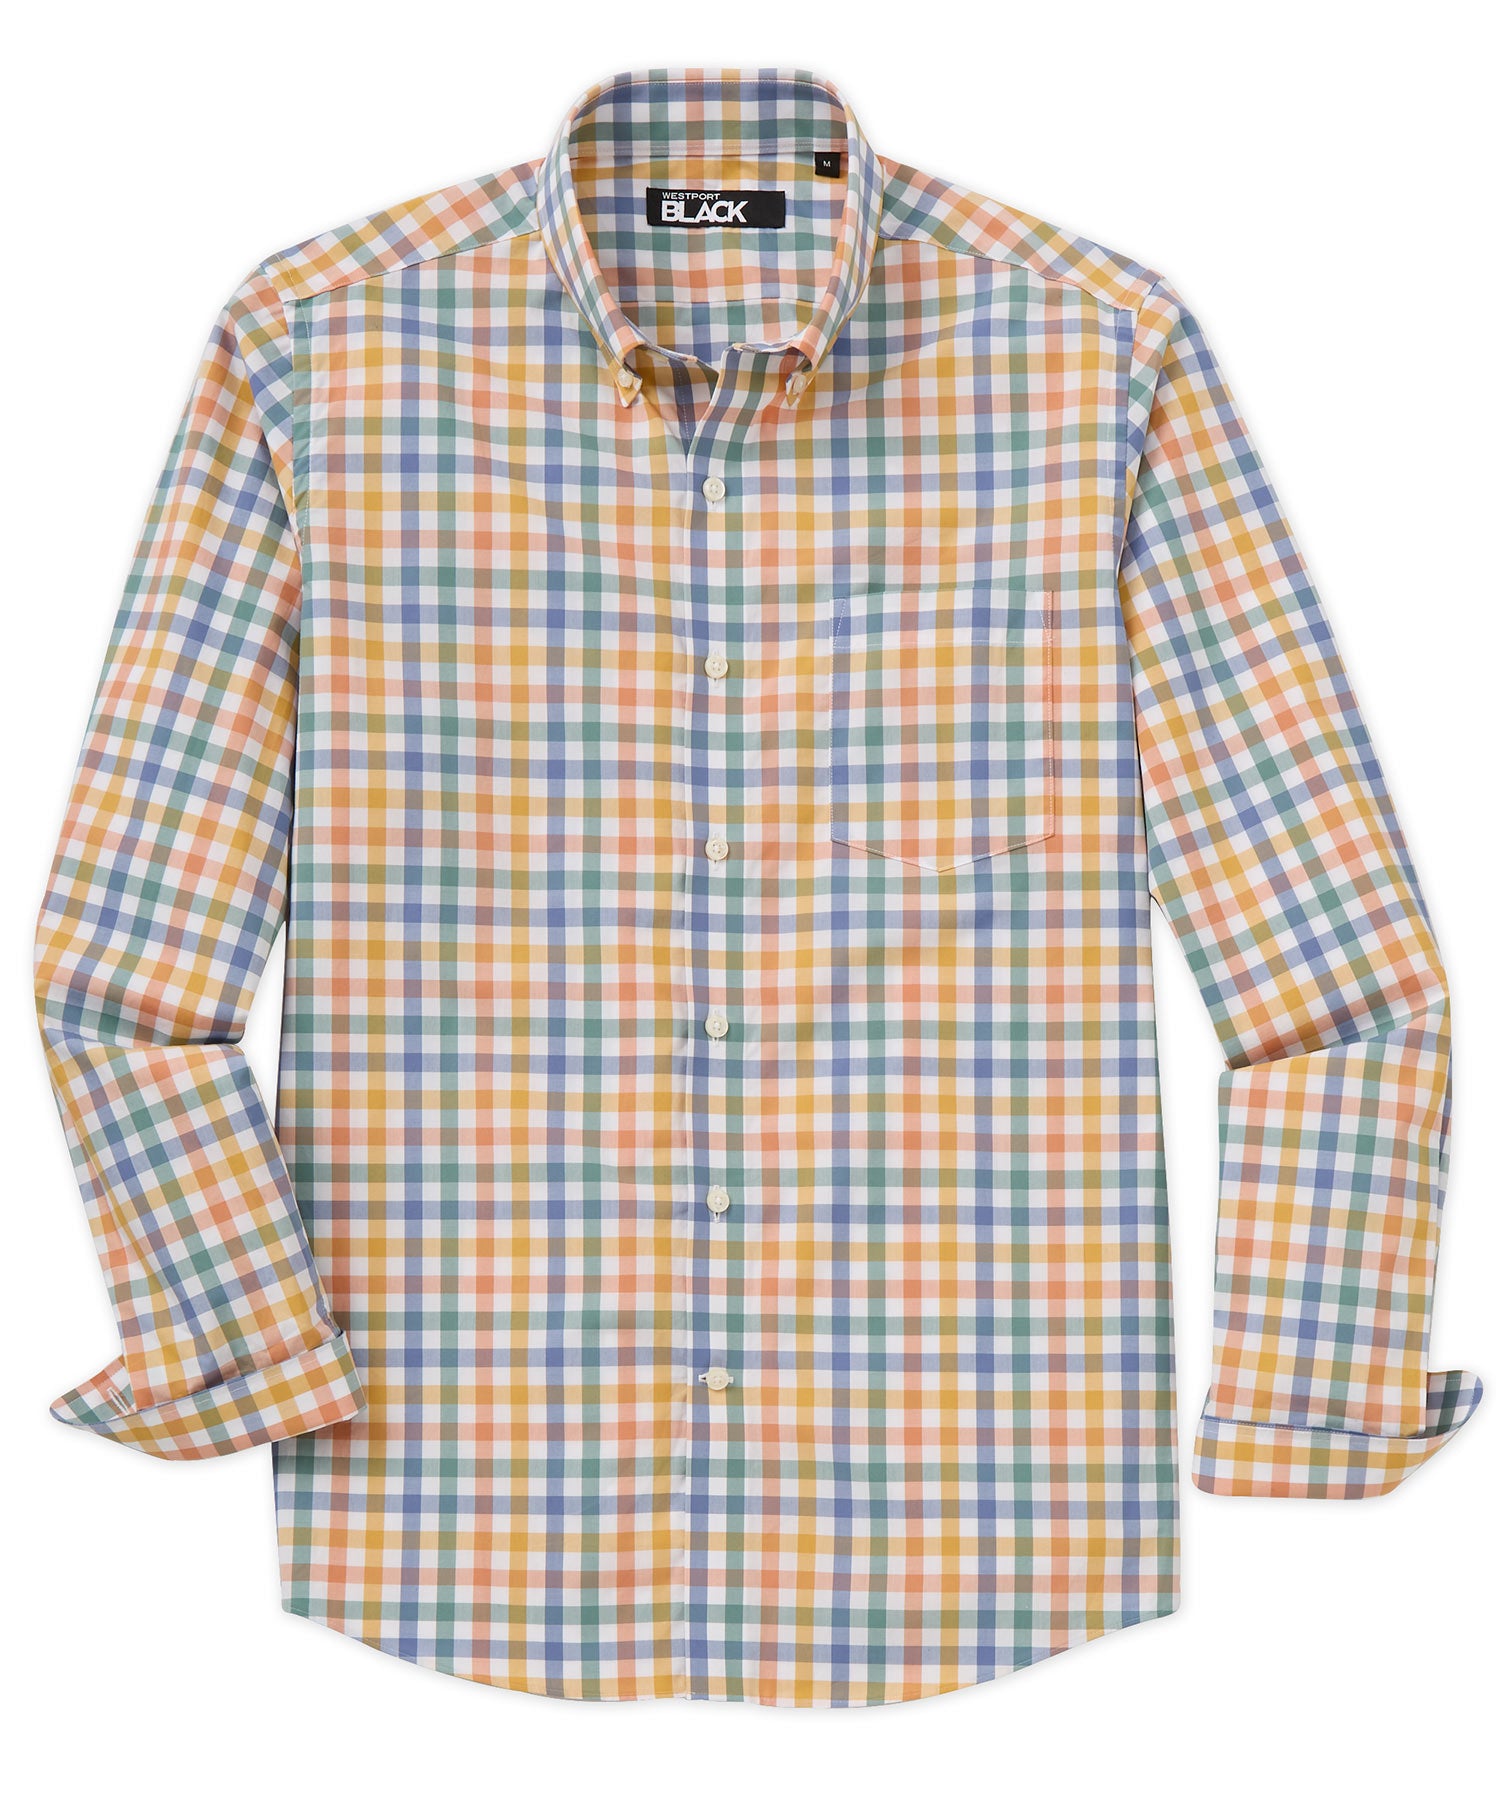 Westport Black Long Sleeve Button-Down Cotton Plaid Sport Shirt, Men's Big & Tall